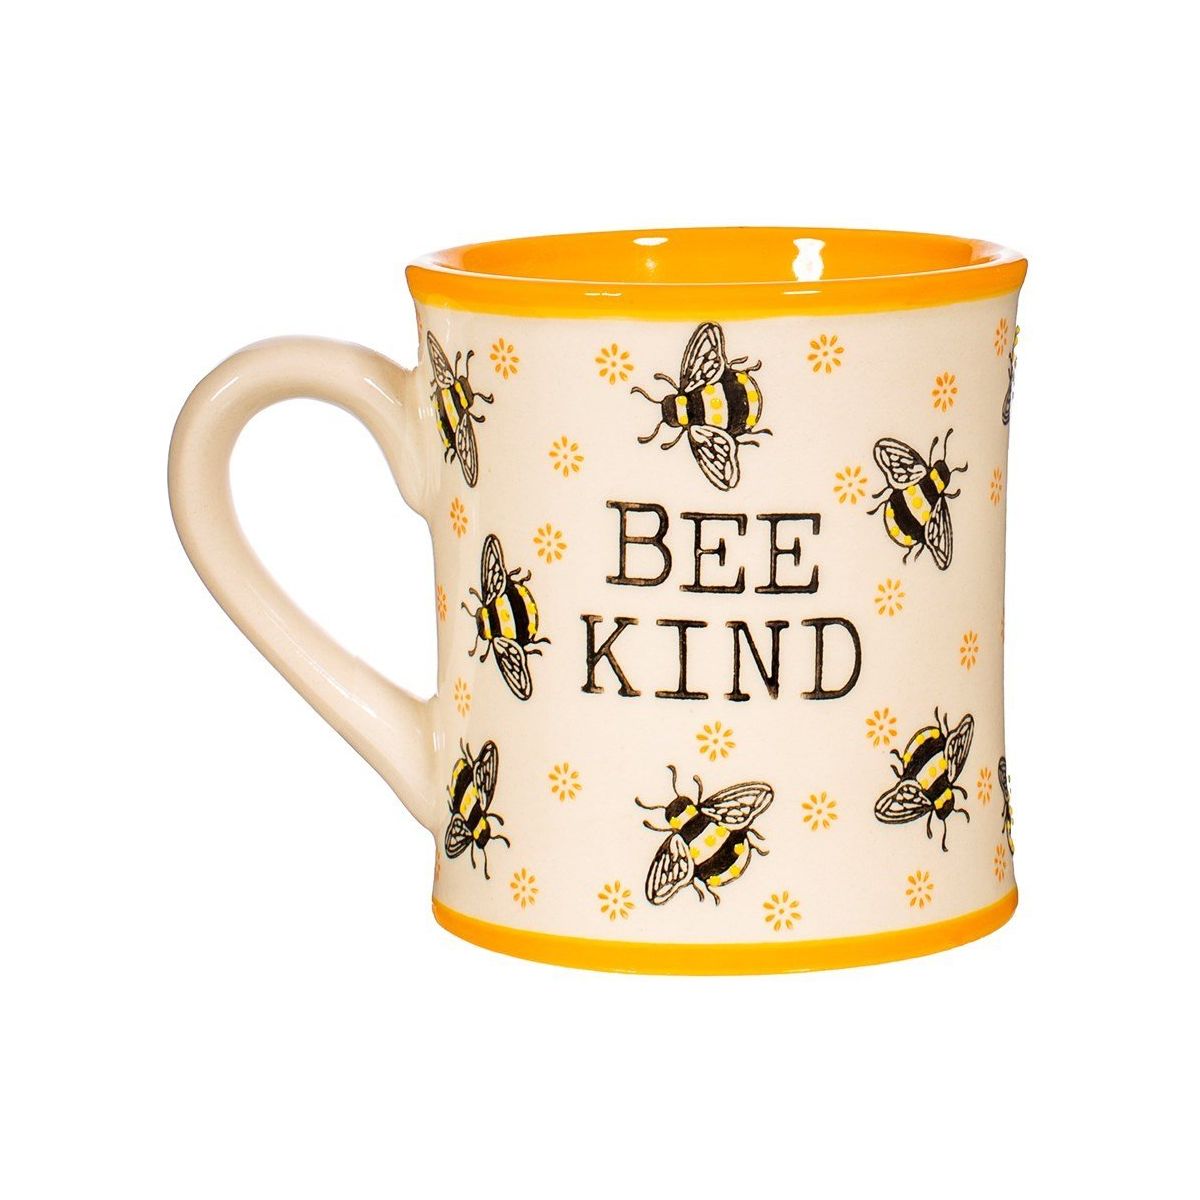 Bee Kind Mug - Ashton and Finch